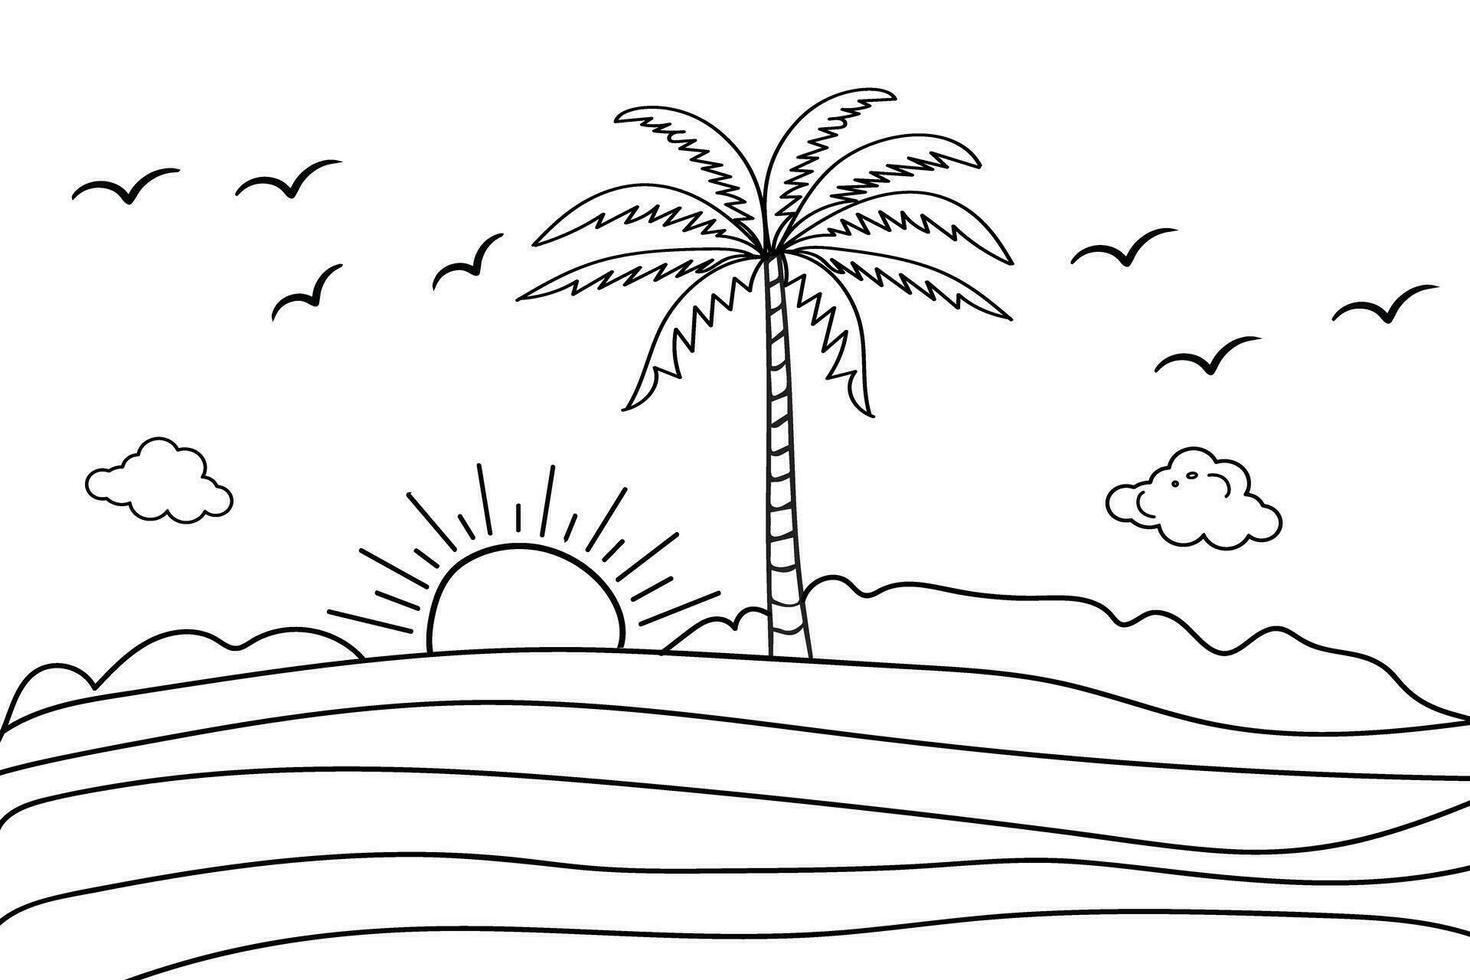 Sommer- Sonnenuntergang tropisch Strand Linie Kunst Vektor Illustration, Hand gezeichnet Sonnenuntergang und Sonnenaufgang Gliederung Landschaft tropisch Strand, Palme Baum mit Sonnenuntergang Wellen Natur Sicht, Kinder Zeichnung Strand Färbung Seiten